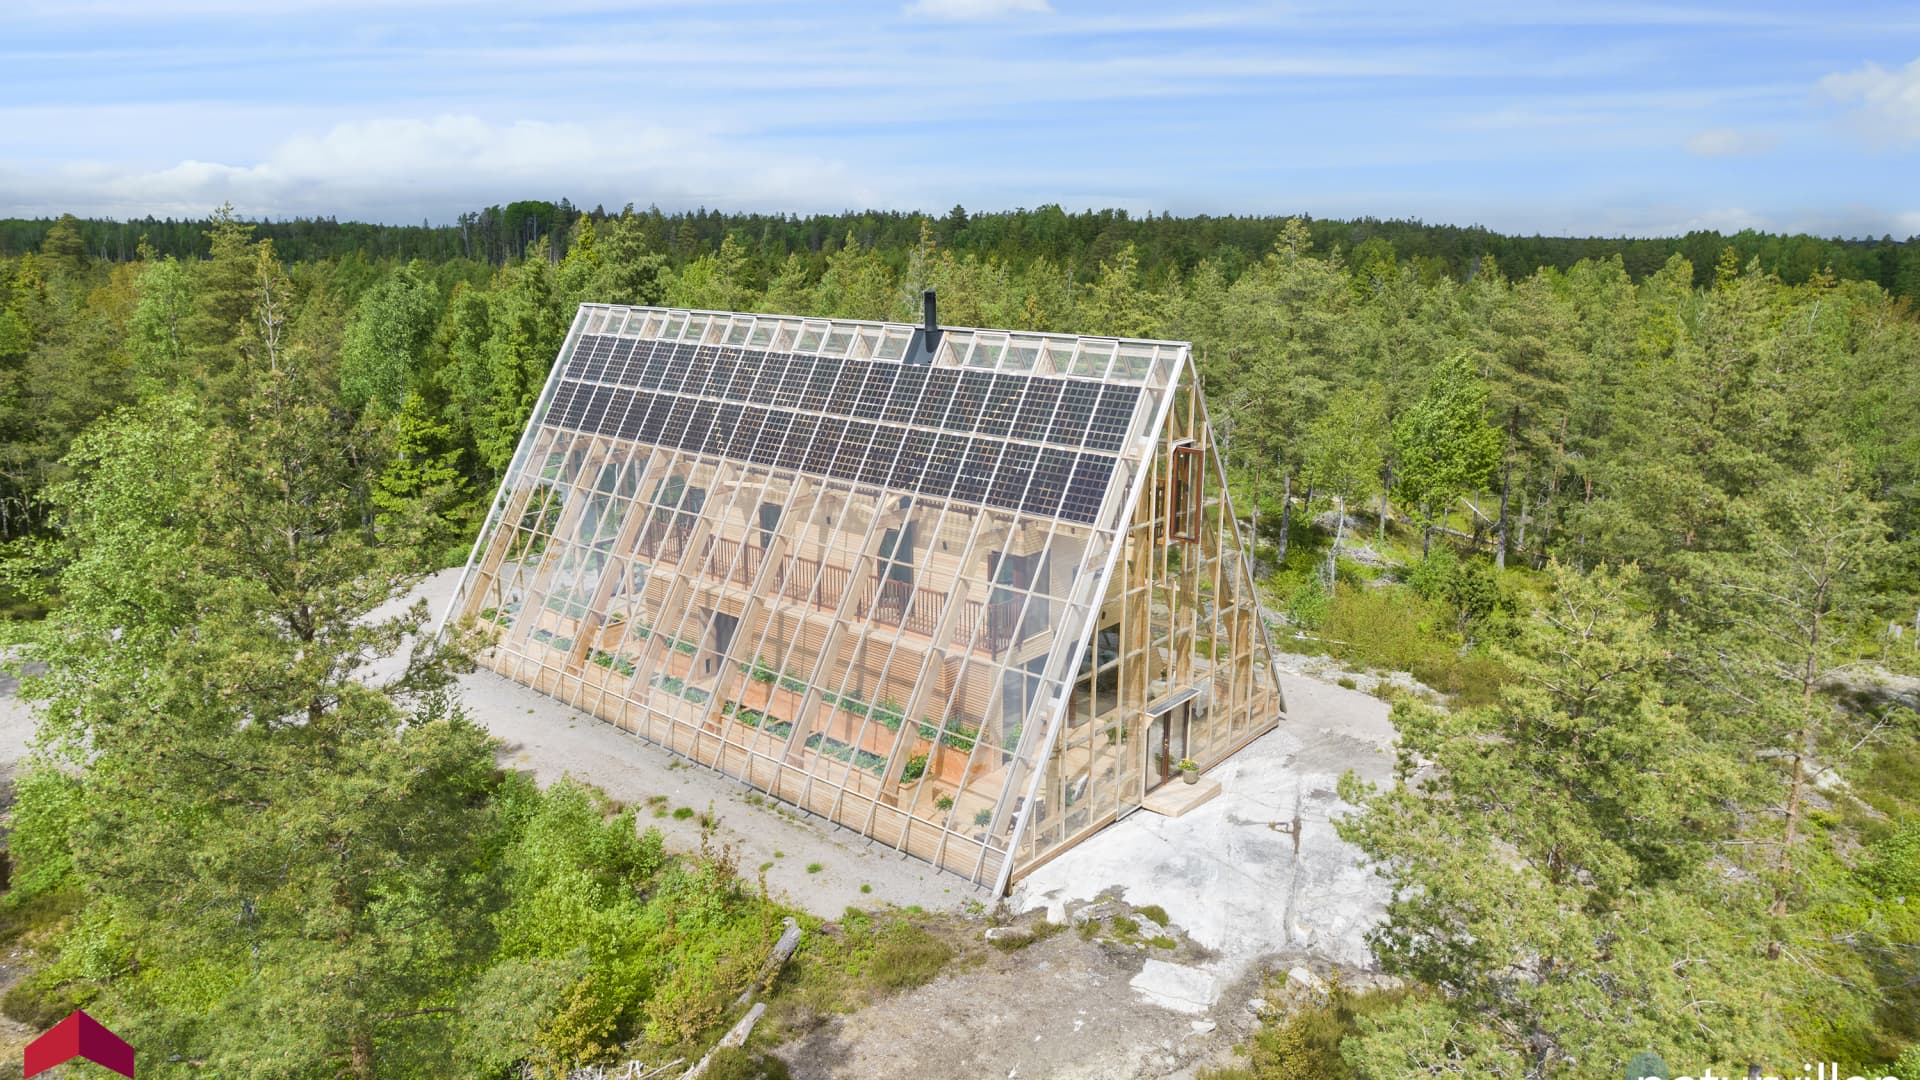 Unikt designat ekologiskt naturhus is a sustainable off-the-grid home in Brålanda, Västra Götalands län, Sweden.